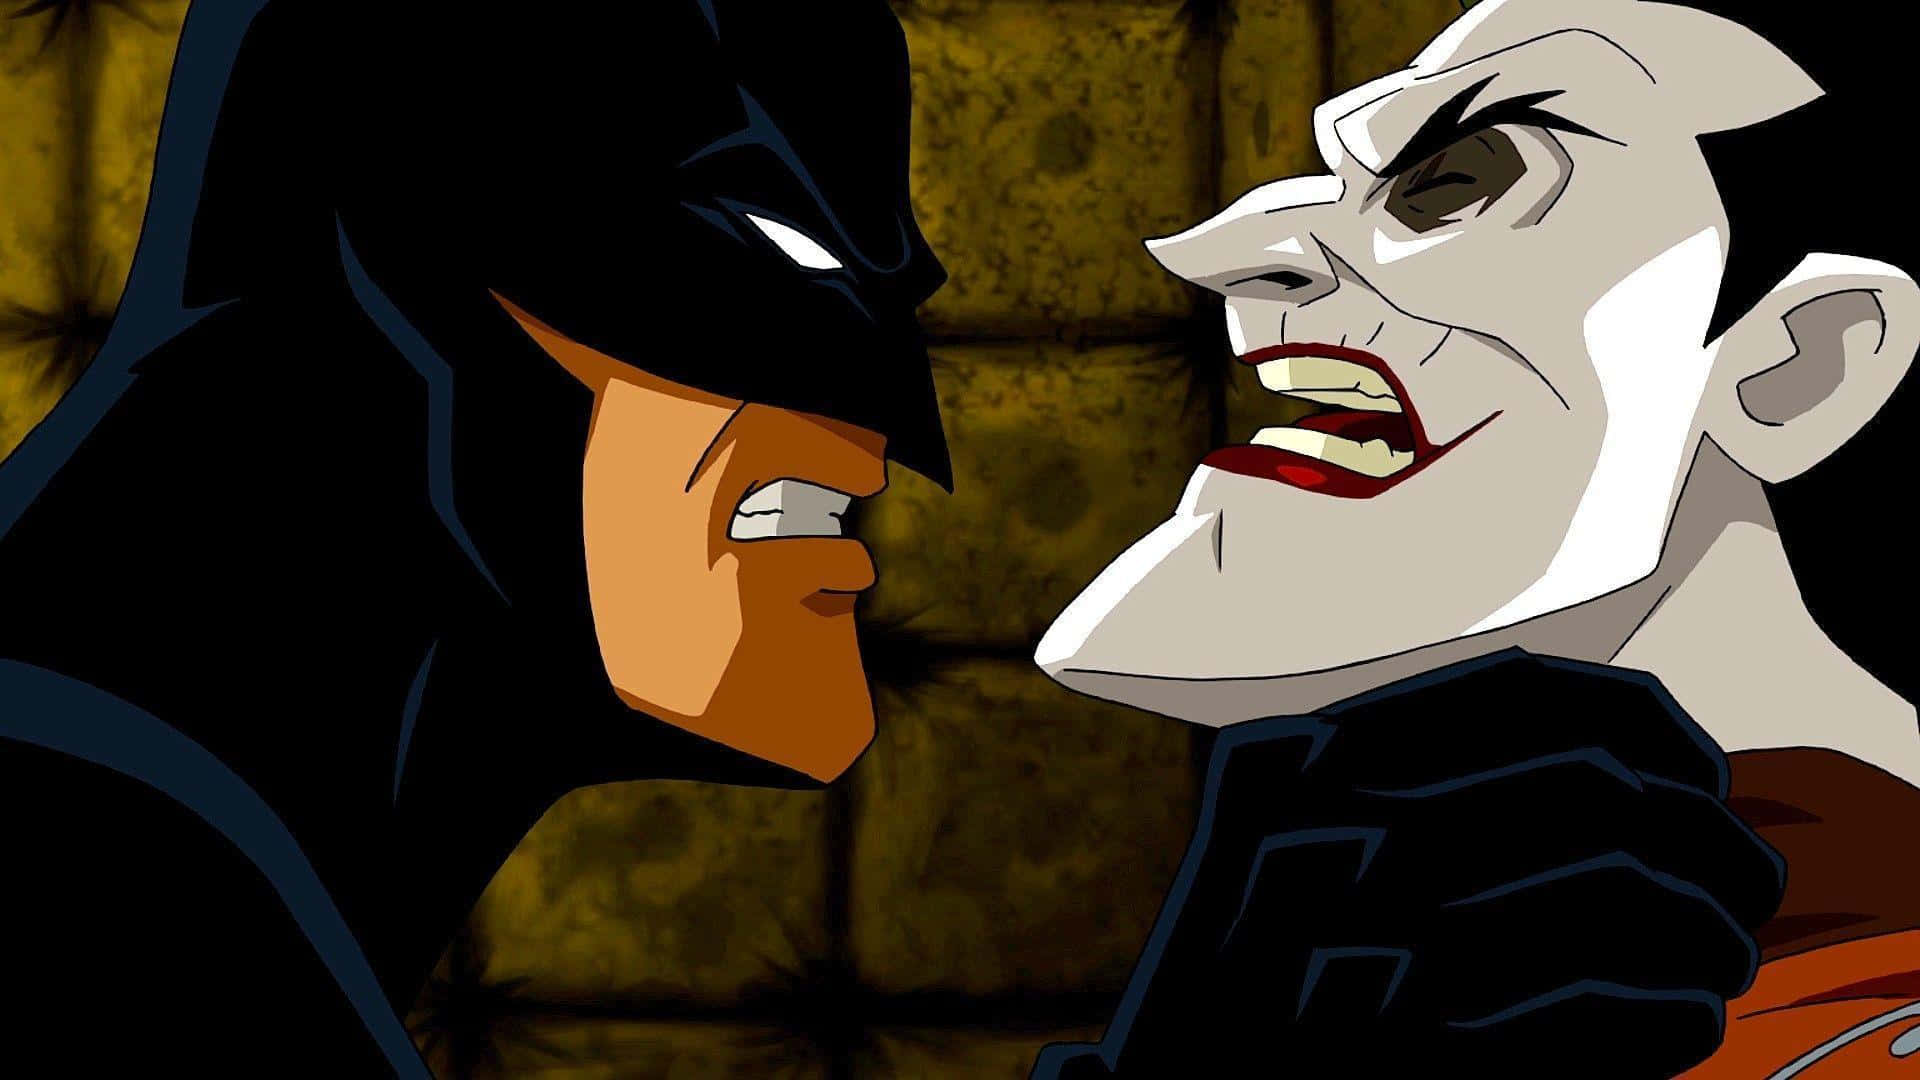 Batman confronting Red Hood - Intense Face-off Wallpaper